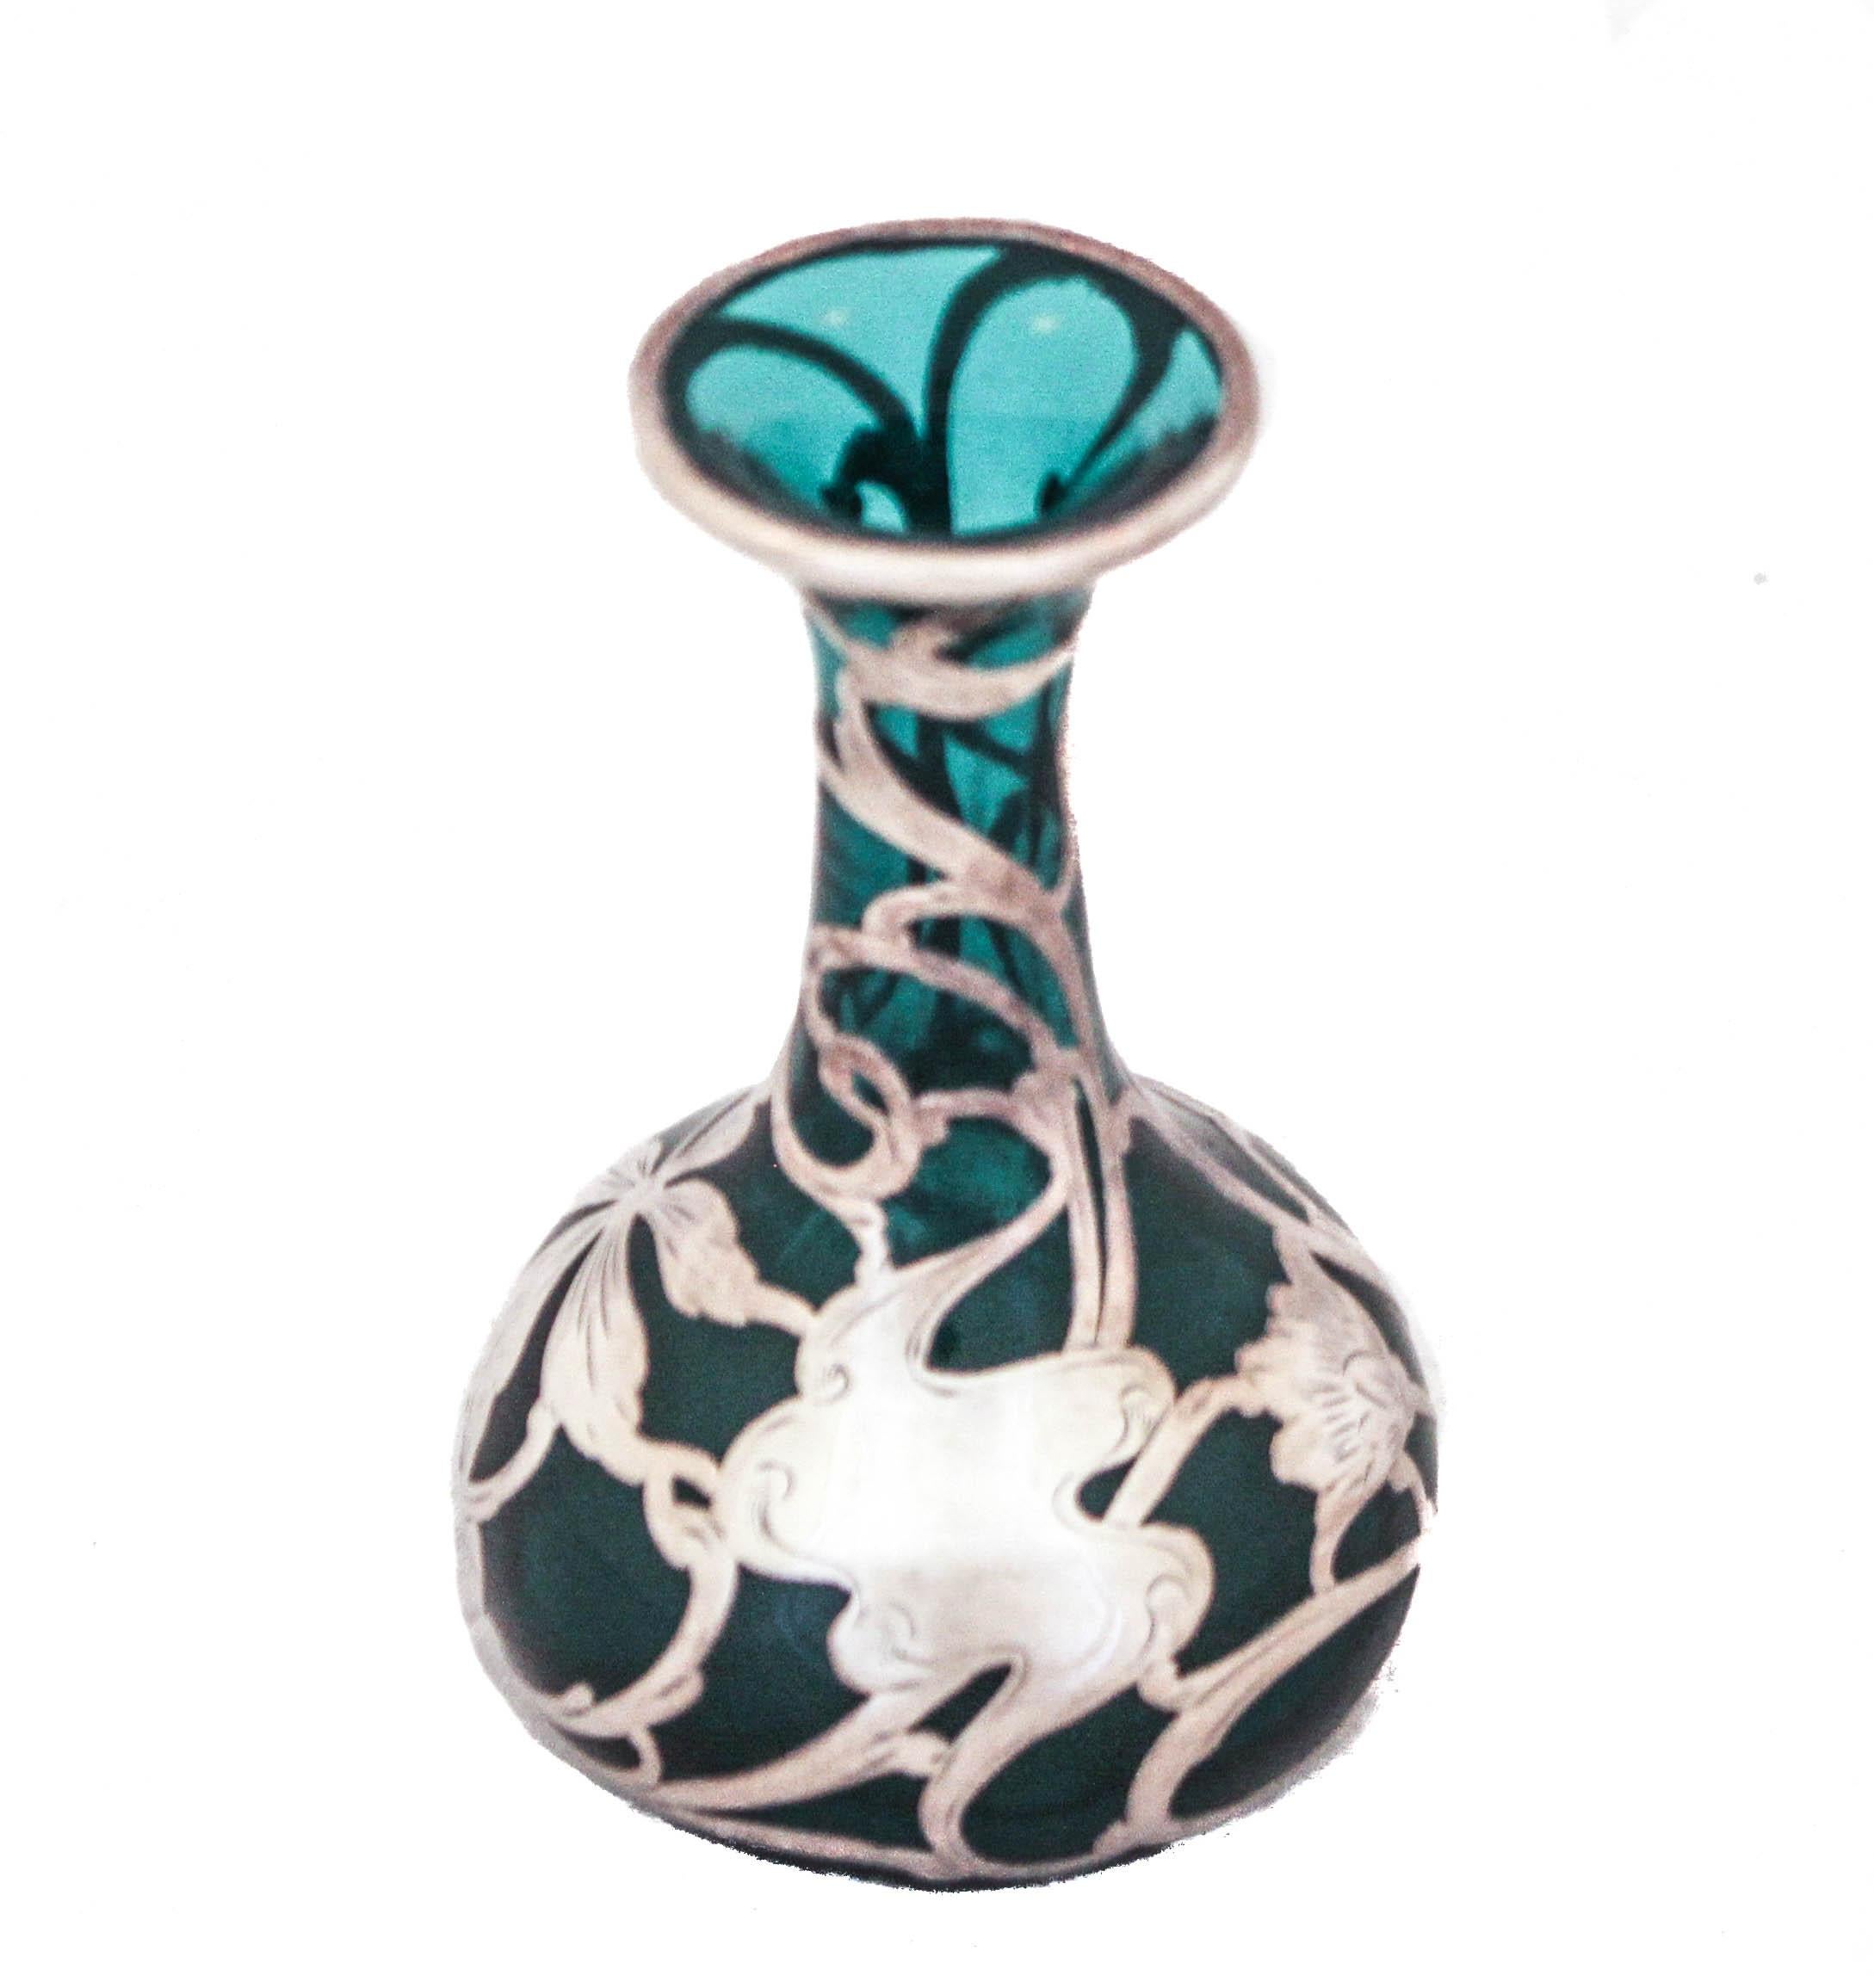 Nous vous proposons un vase Art nouveau en argent sterling de couleur sarcelle.  Le motif Art nouveau en argent entoure tout le vase avec des tourbillons, des fleurs et des feuilles, tous des motifs de ce genre.  Ce qui est très particulier, c'est